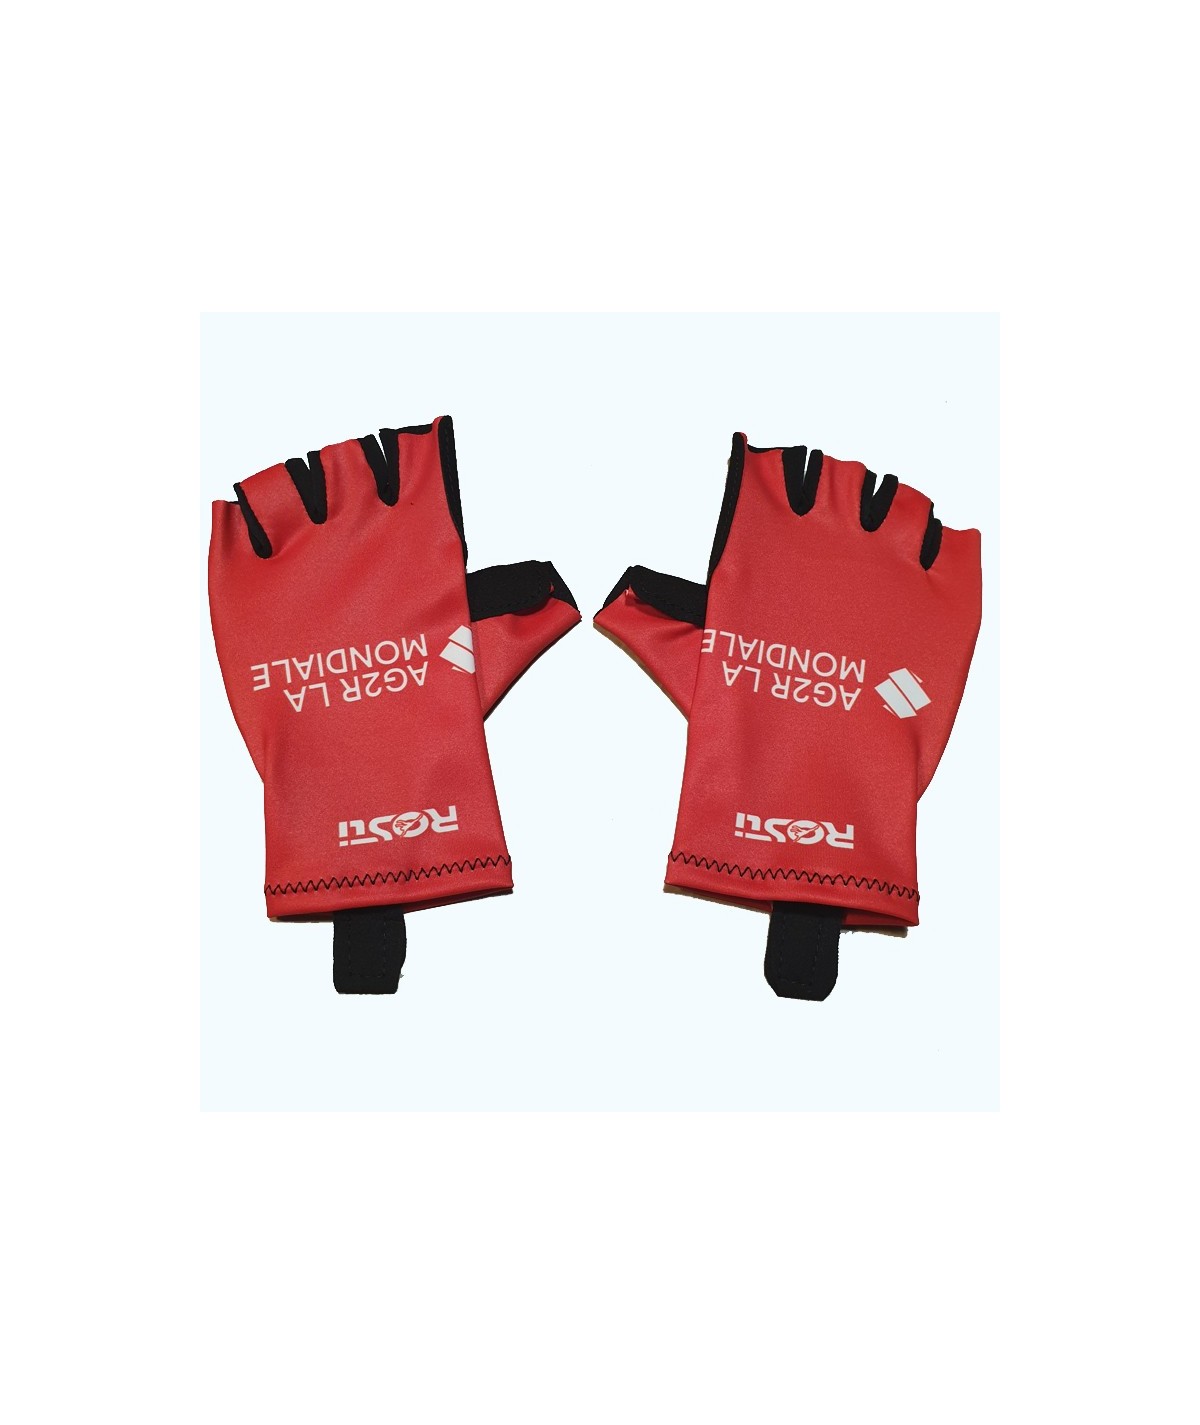 Leader Vuelta Bike Gloves